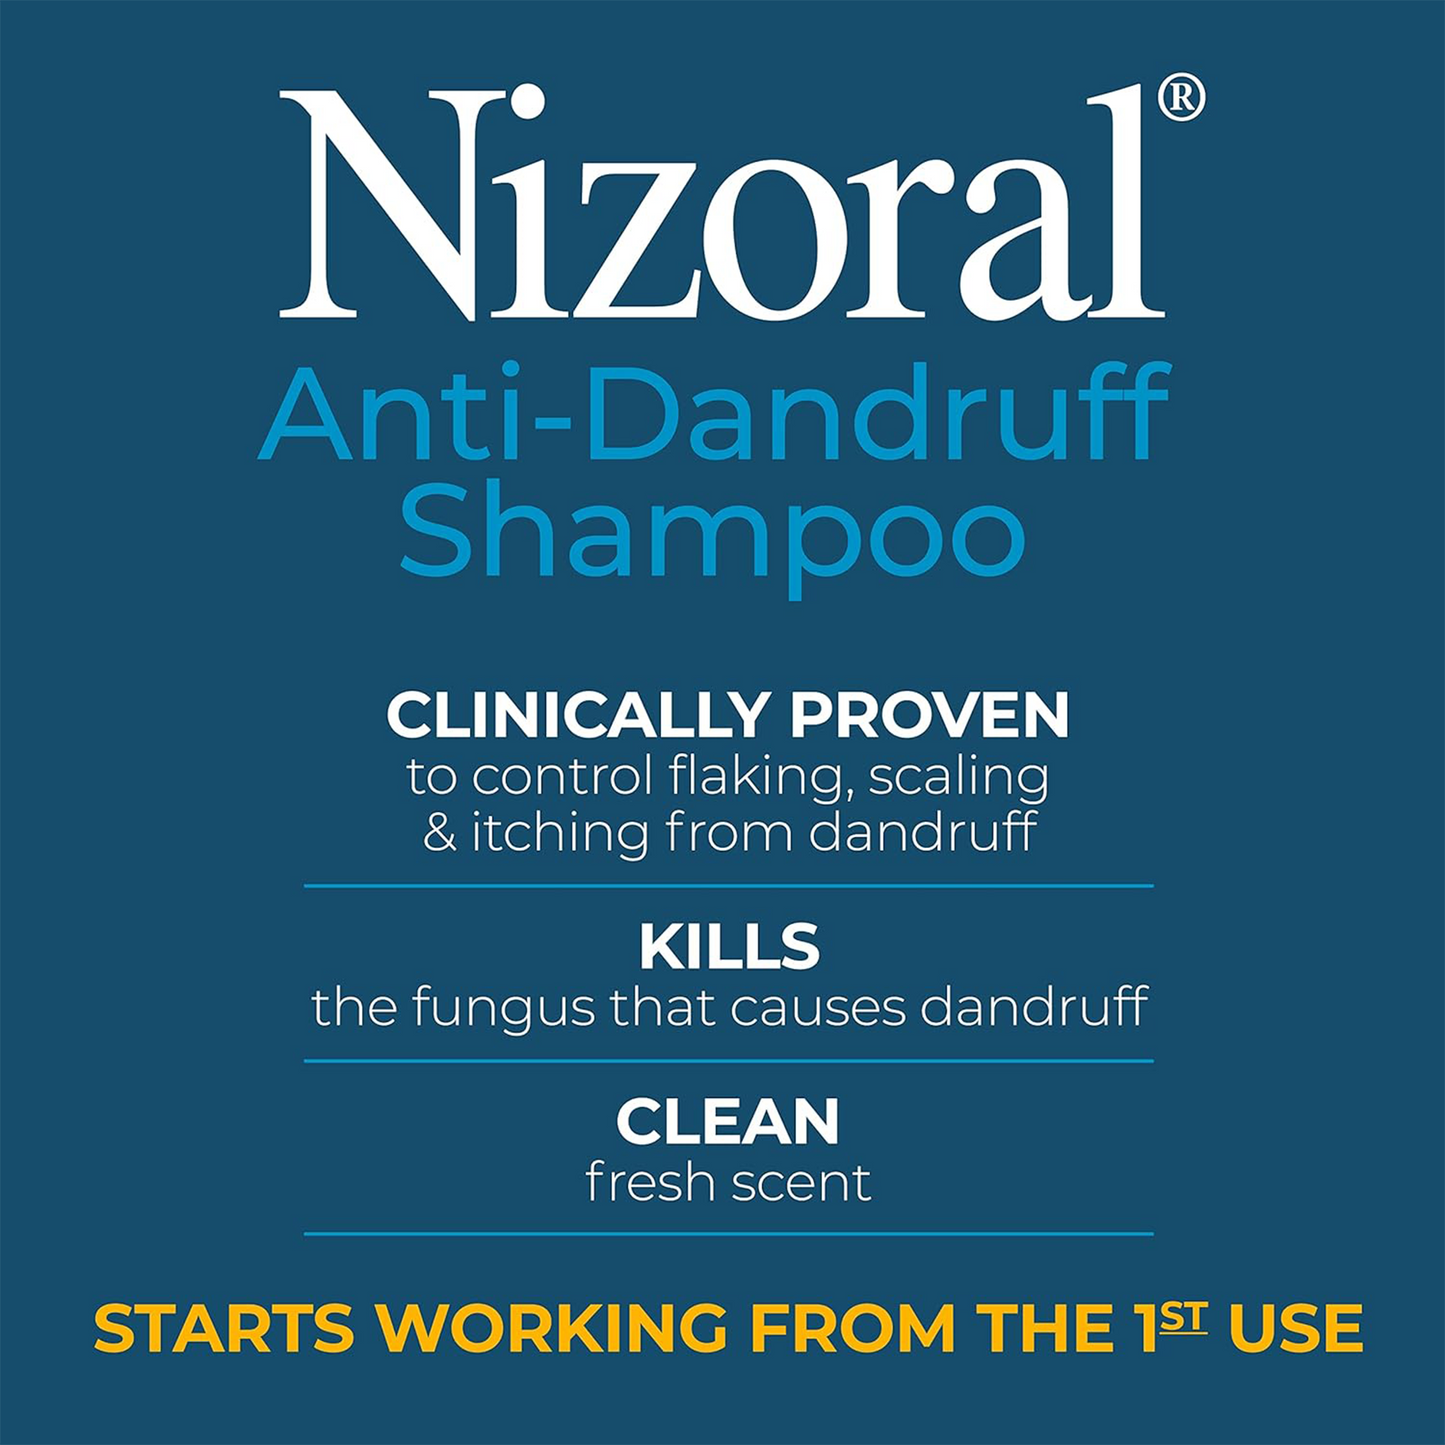 Nizoral ®️ Anti-Dandruff Ketoconazole 1% Anti-Dandruff Shampoo • Anti-Dandruff Shampoo Against Flaking, Scaling, Itching & Irritation • 1x200ml